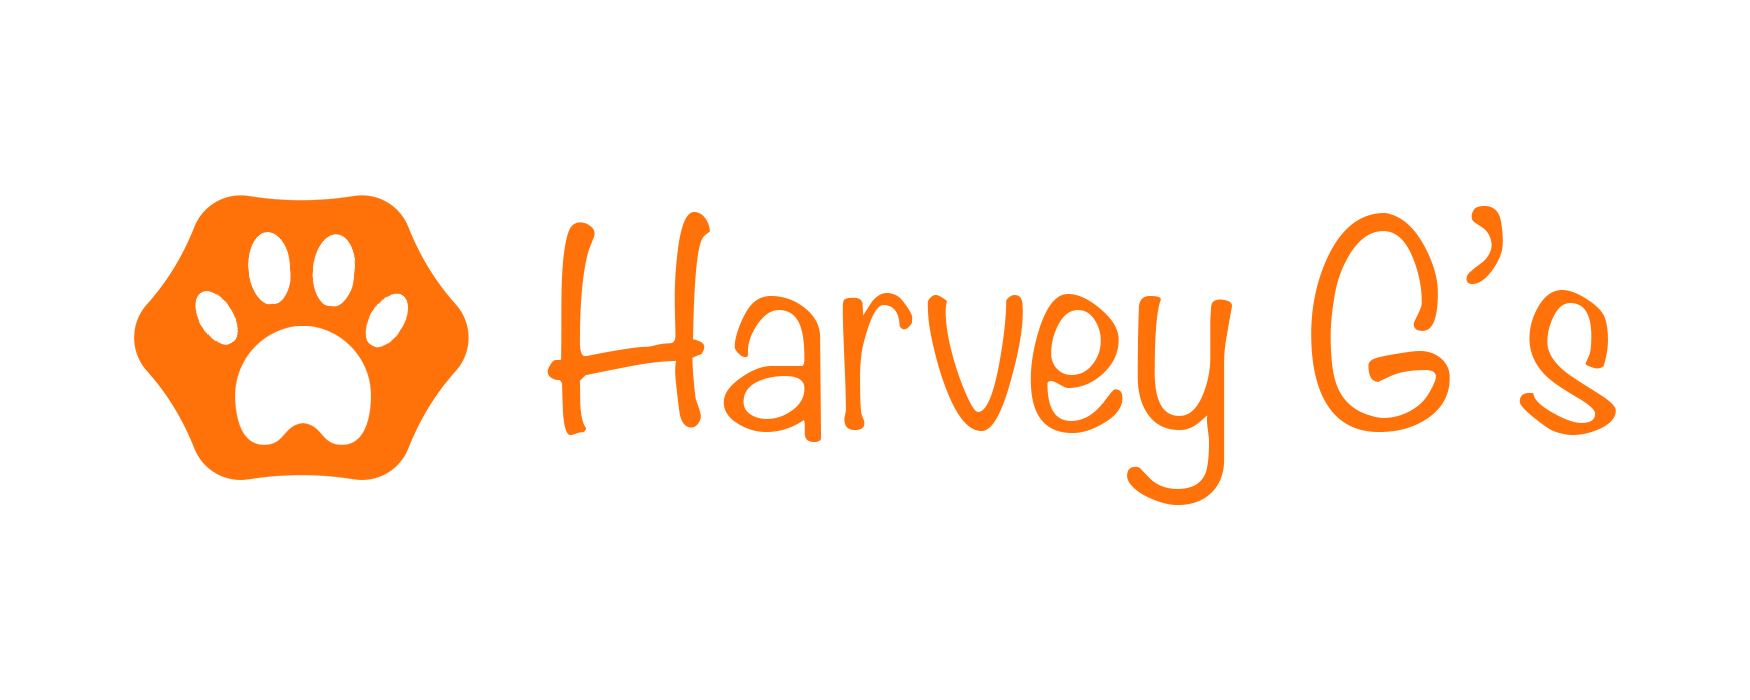 Harvey Gs Shop